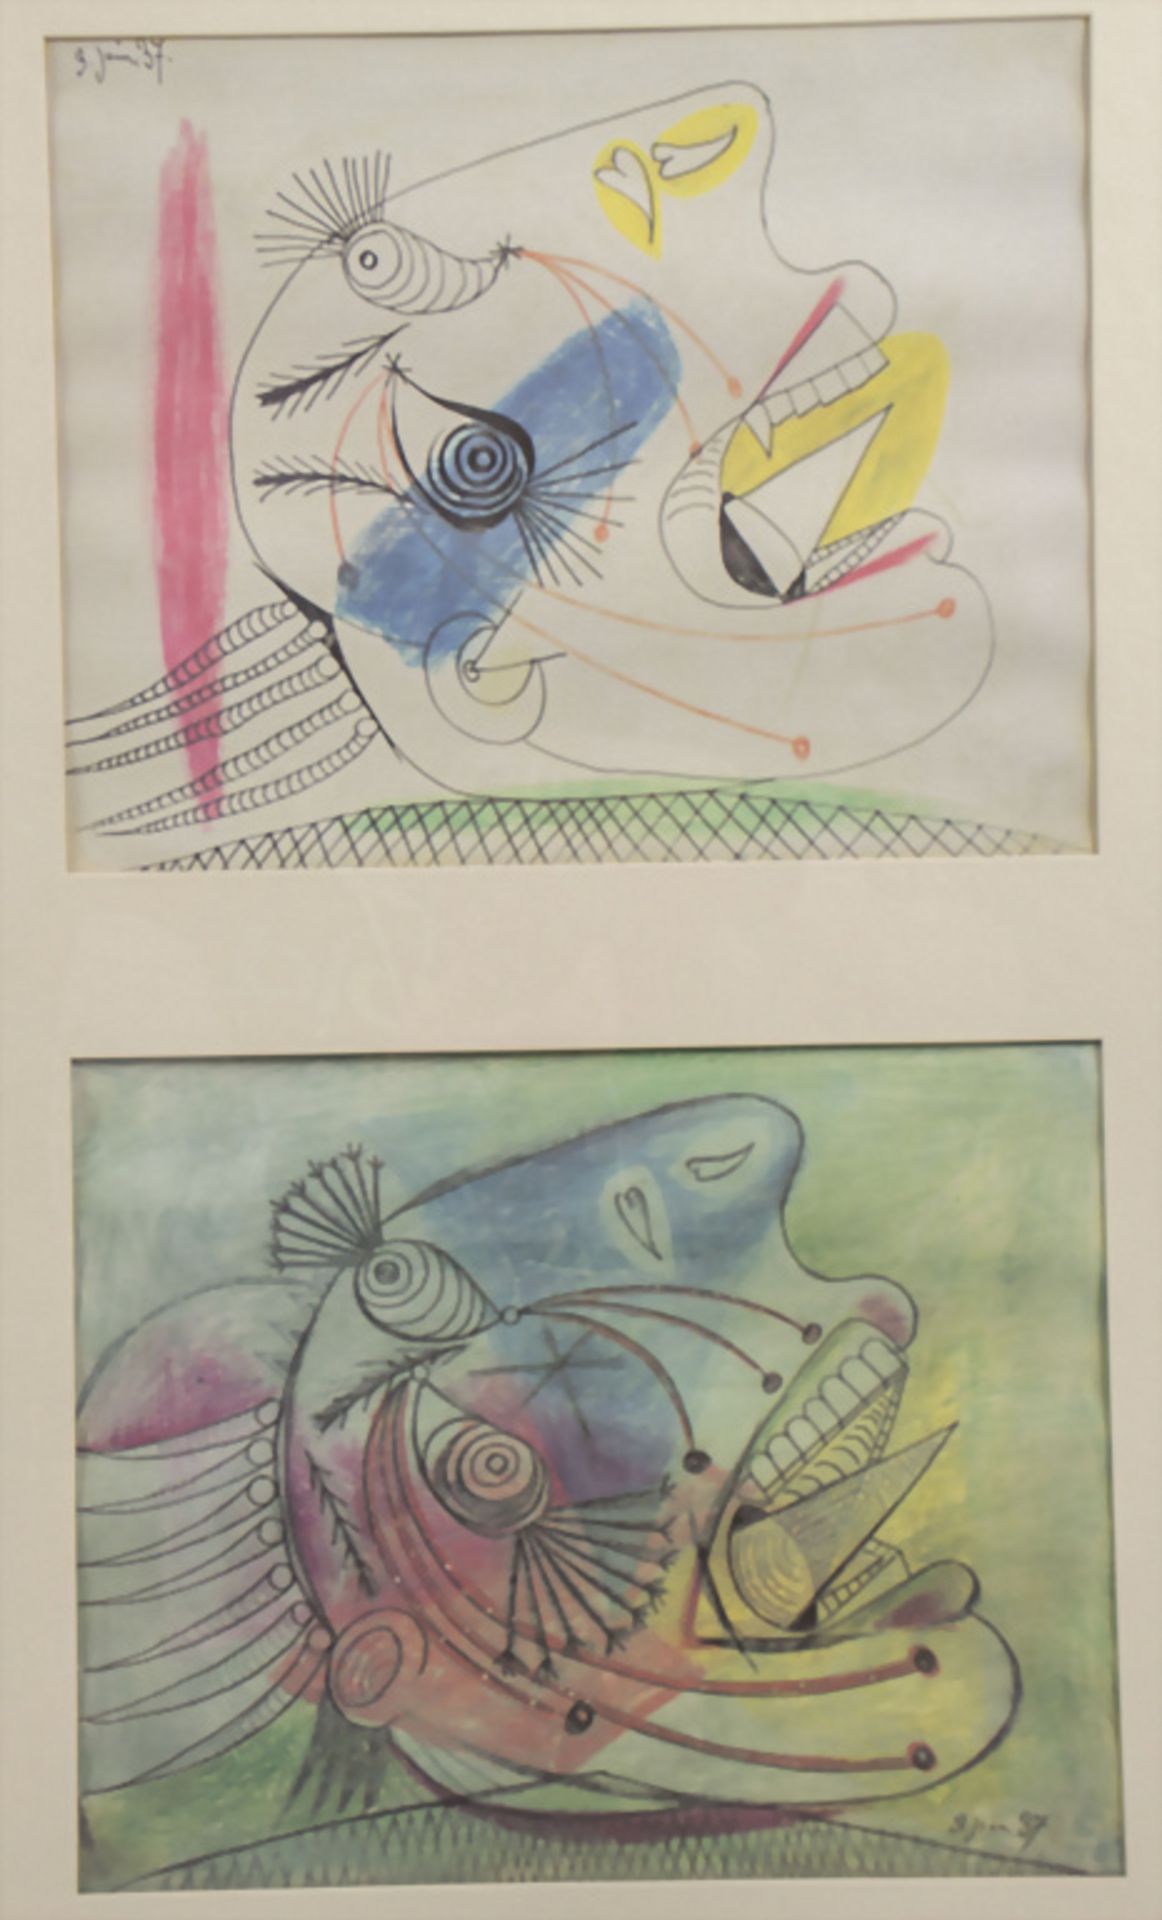 Pablo PICASSO (1881-1973), Konvolut 'Graphische Werke' / 'Graphic works', SPANDEM, Paris, 1990 - Bild 5 aus 11